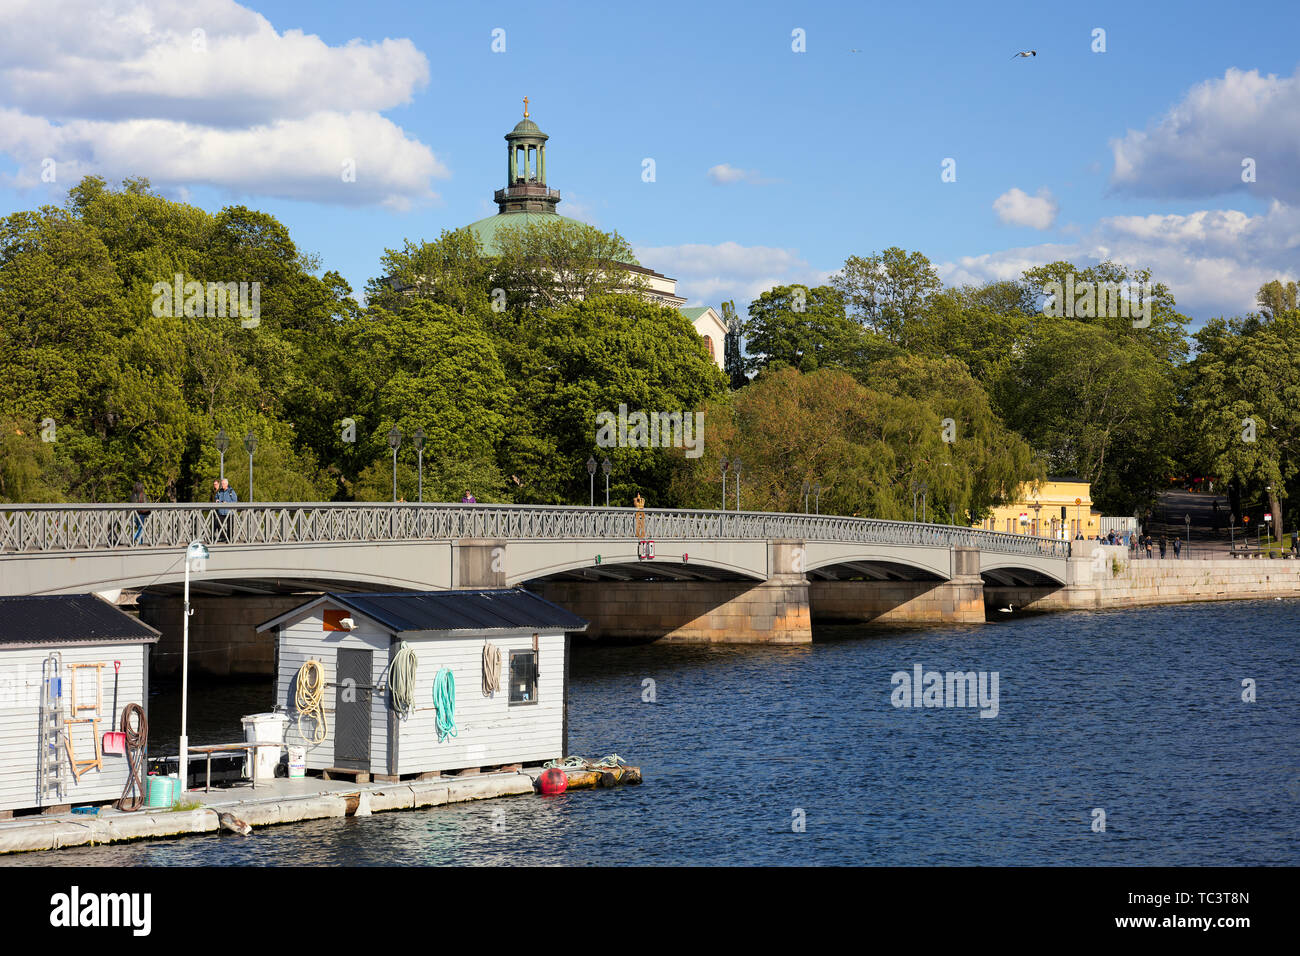 Skeppsholmsbron in front of Skeppsholmen in Stockholm, Sweden Stock Photo